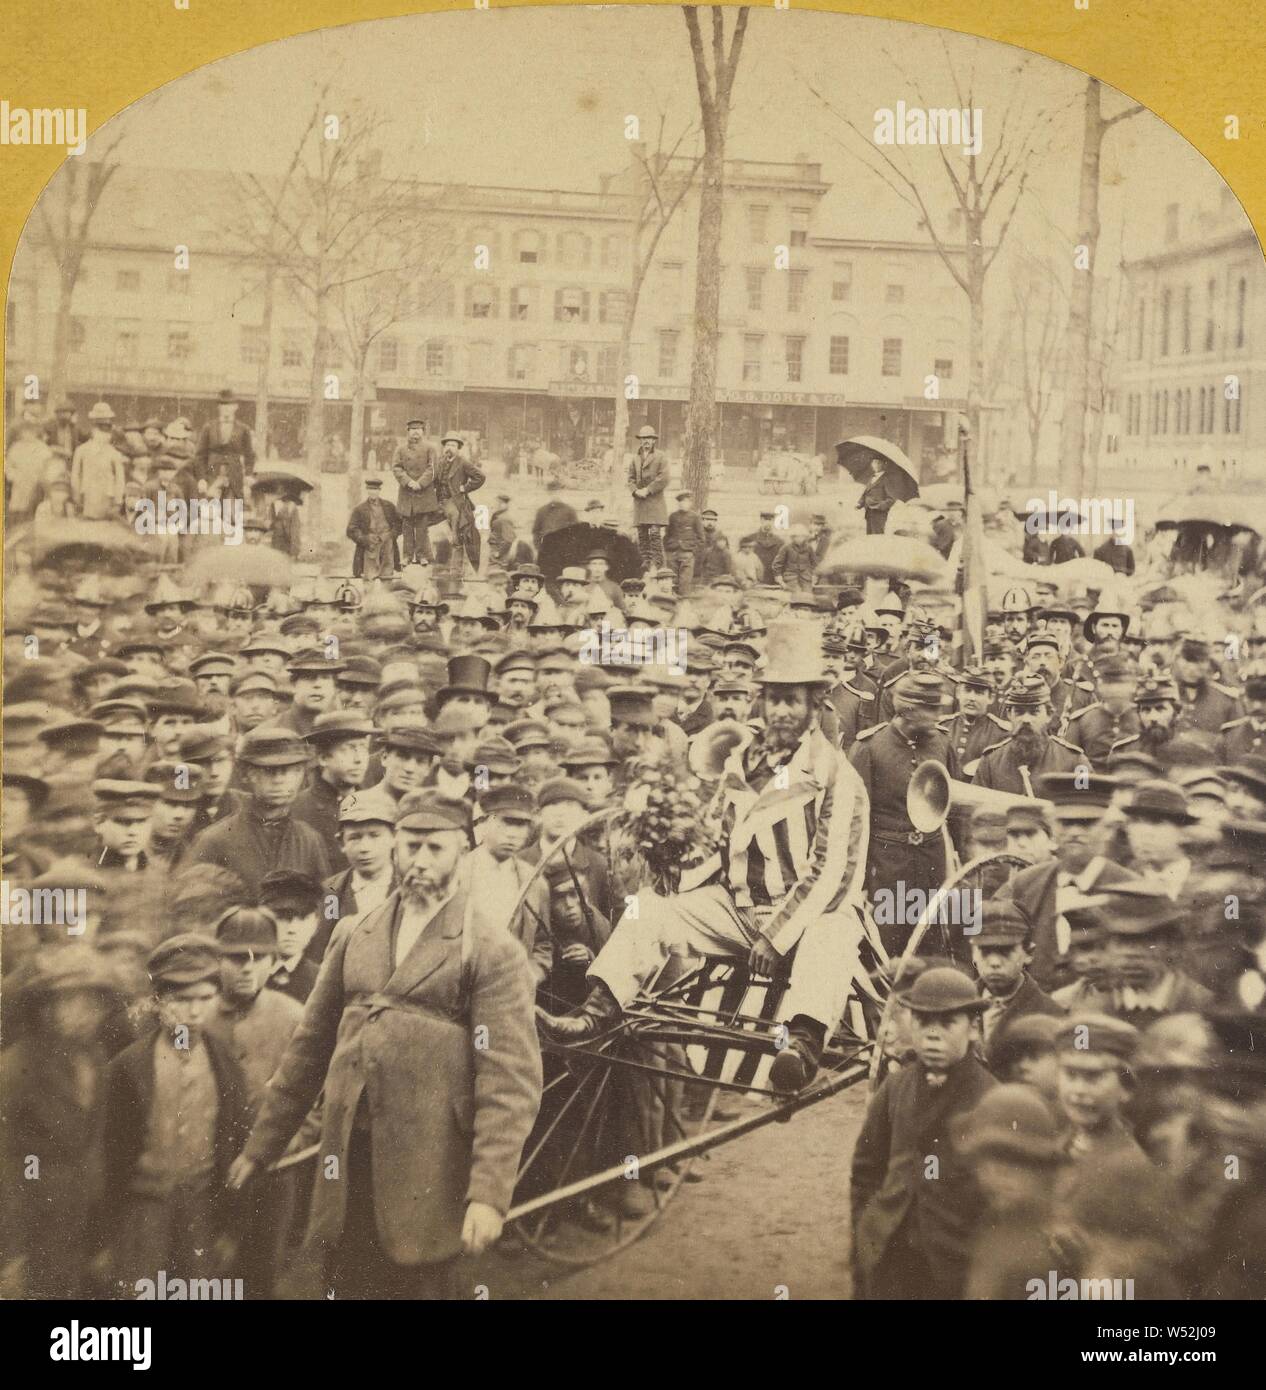 Parade mit Uncle Sam oder Abraham Lincoln Charakter in der Mitte, Unbekannten, amerikanischen, ca. 1865, Eiweiß silber Drucken Stockfoto